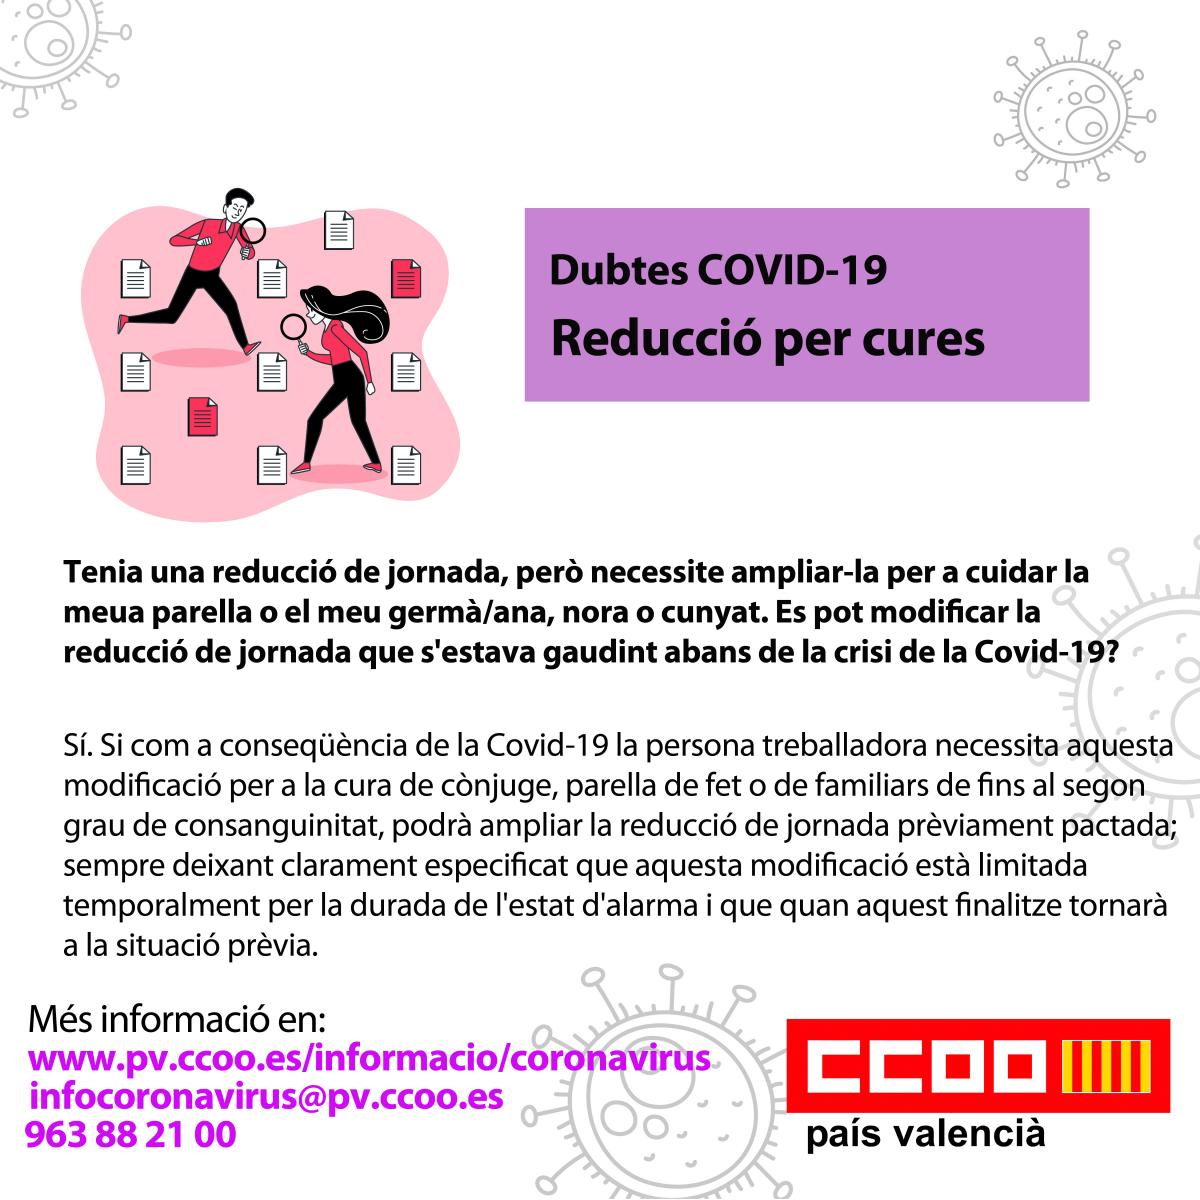 Dubtes COVID-19. Reducci per cures.